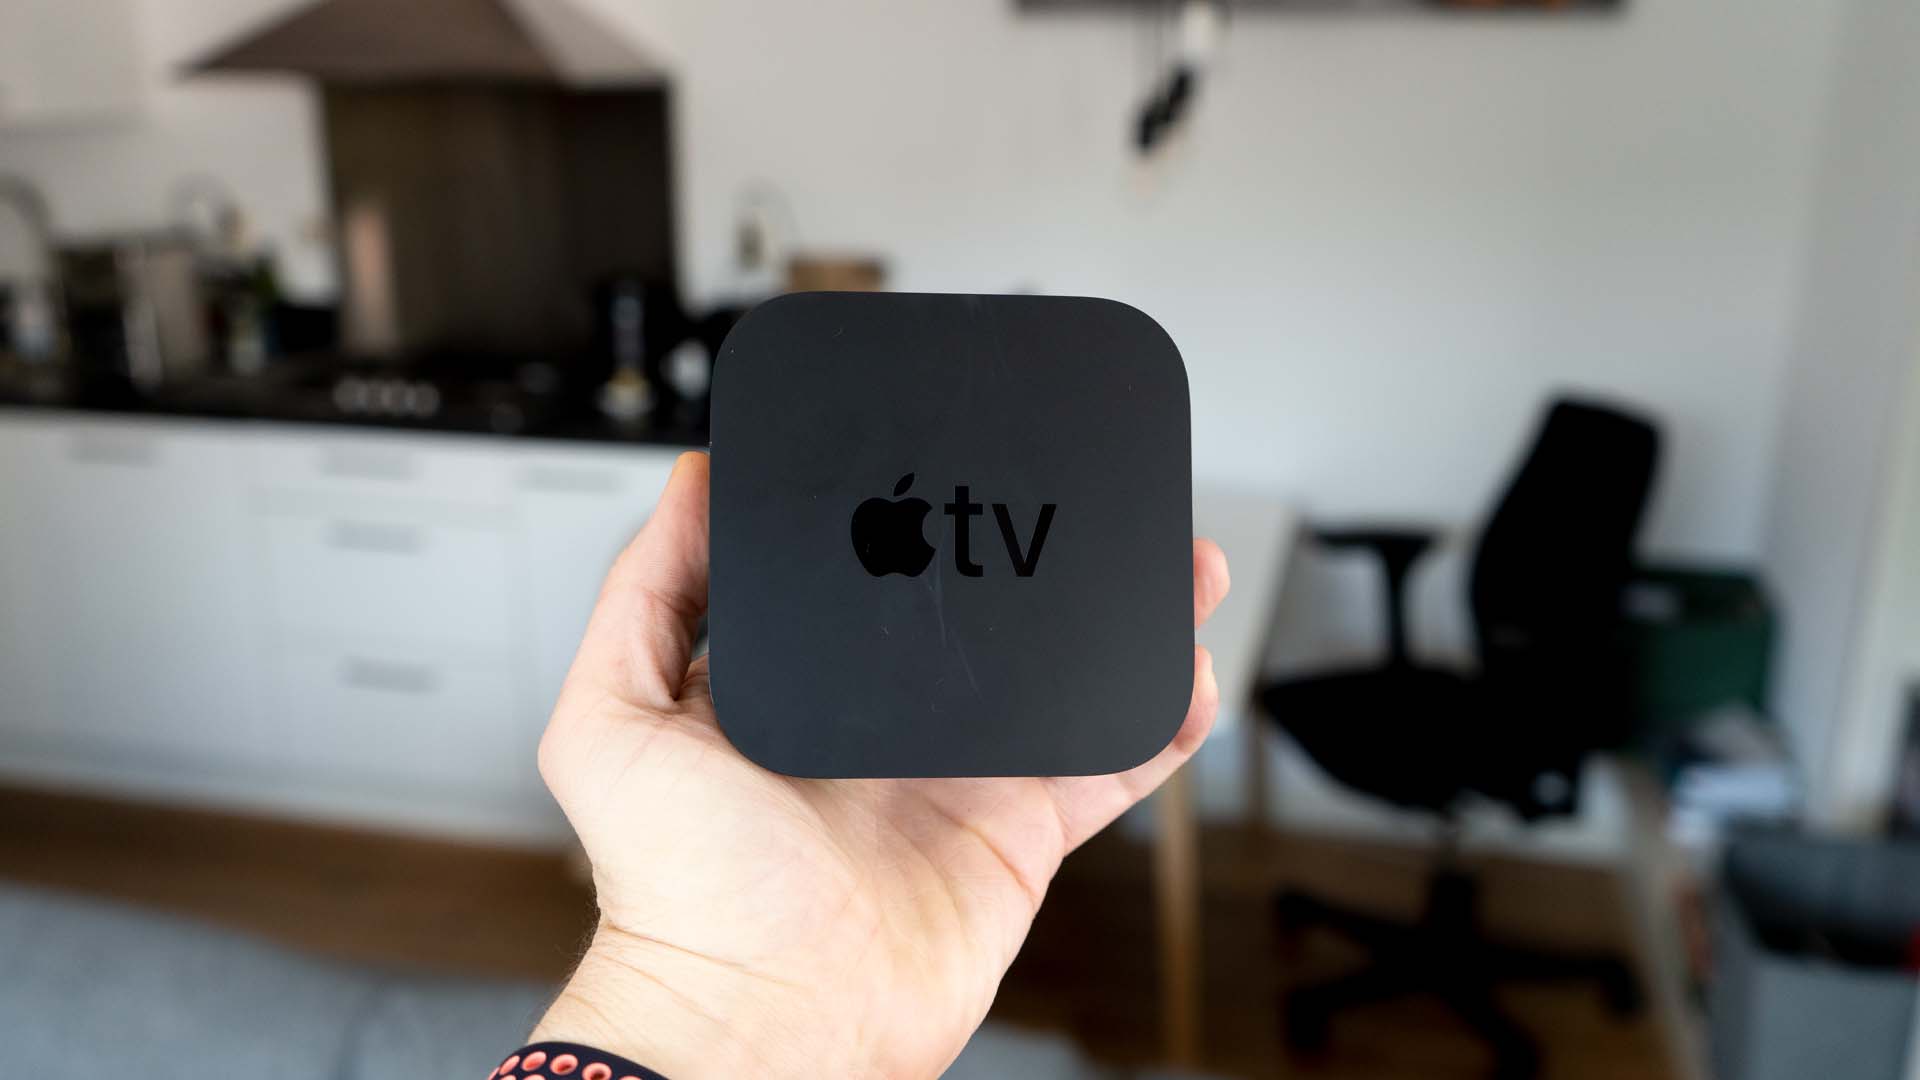 البرمجيات 26 أكتوبر 2021 1comment Apple تلفزيون مزود بنظام tvOS 15.1: تريد أن تعرف عنه